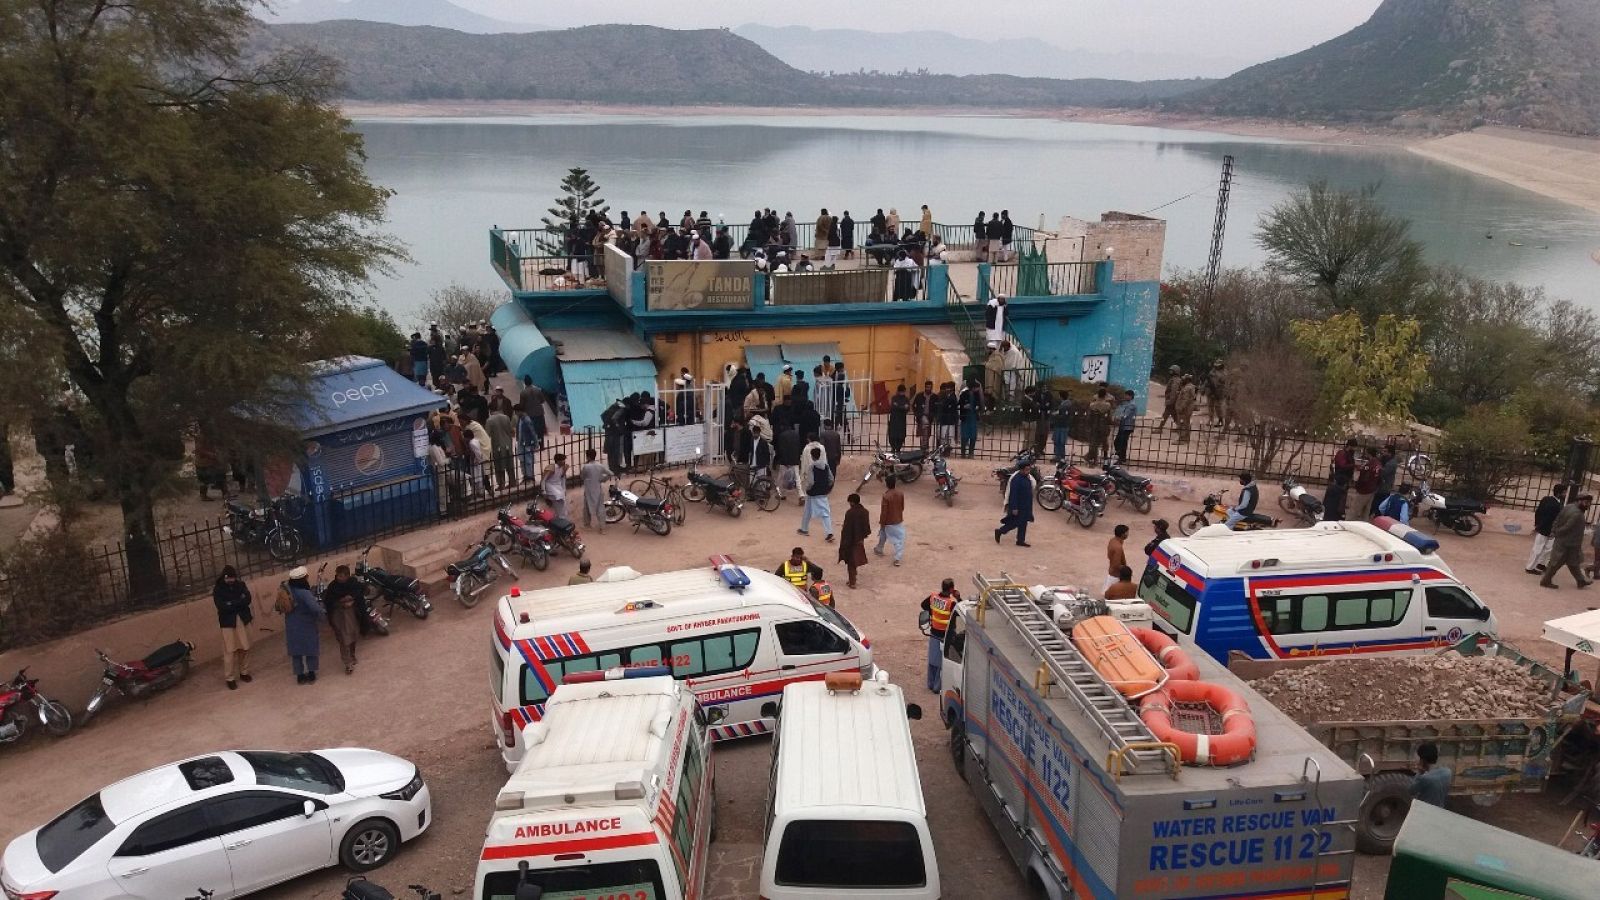 El lago Tanda Dam, el puerto y los vehículos de emergencias para el rescate.